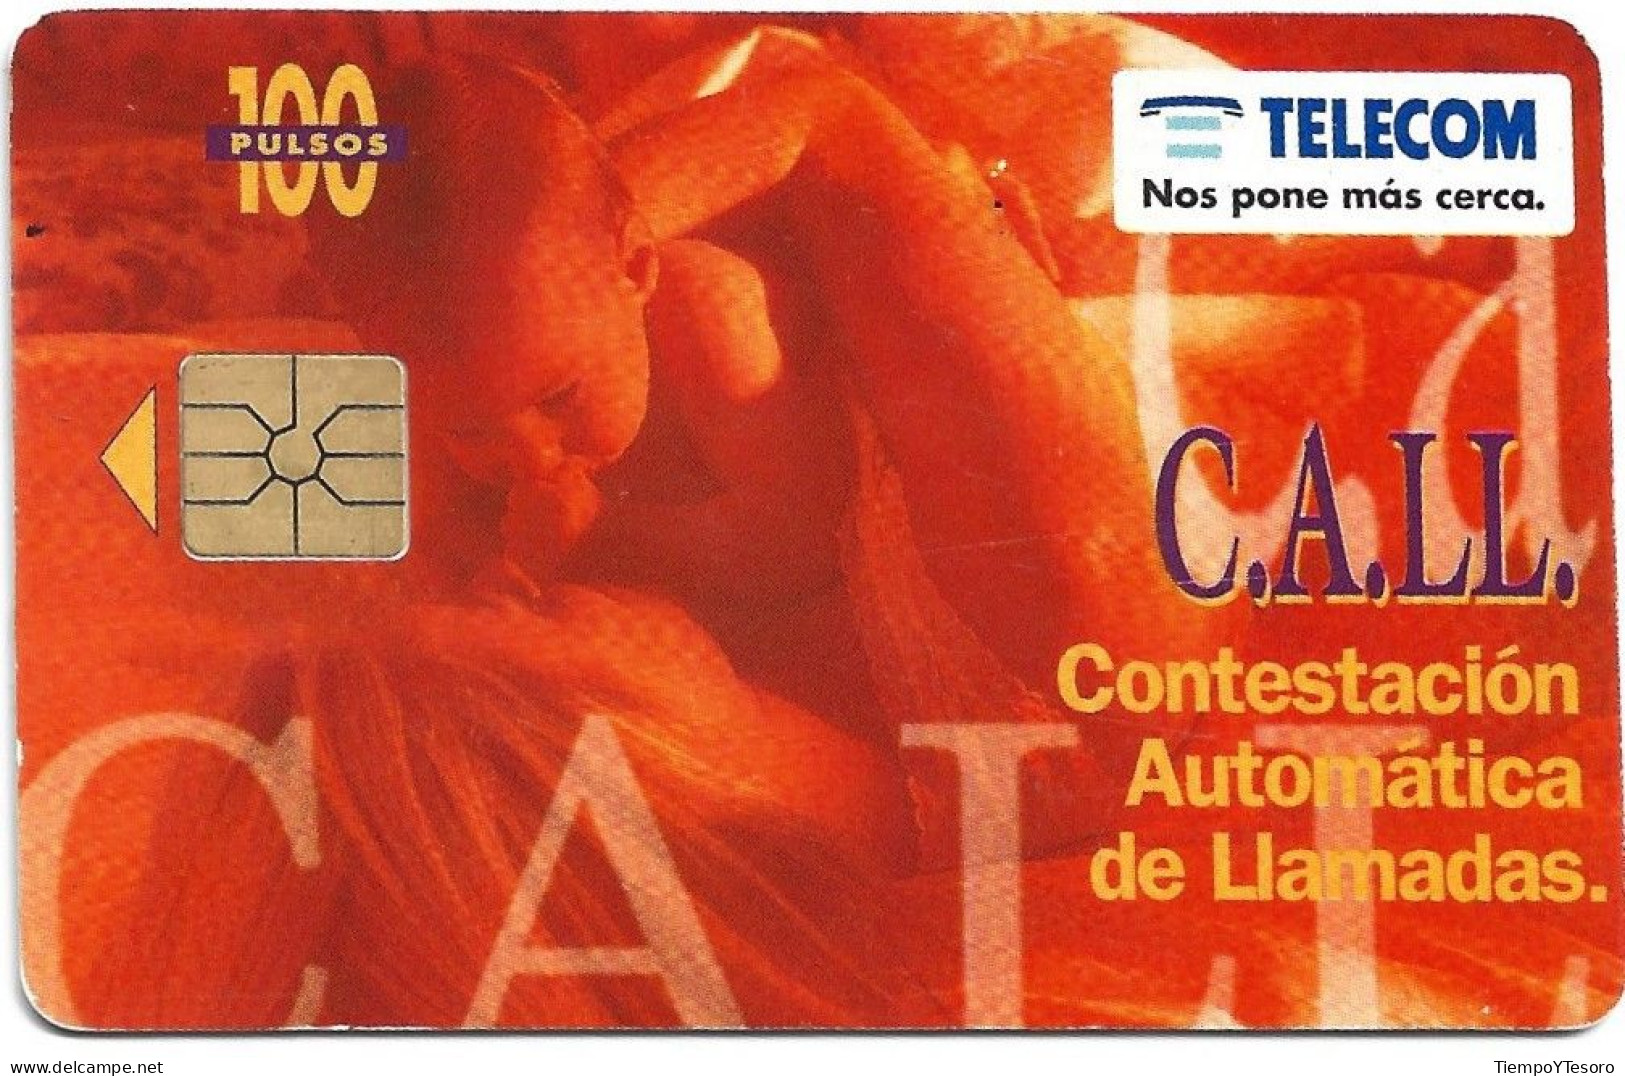 Phonecard - Argentina, C.A.LL. 1, Telecom, N°1080 - Argentinië